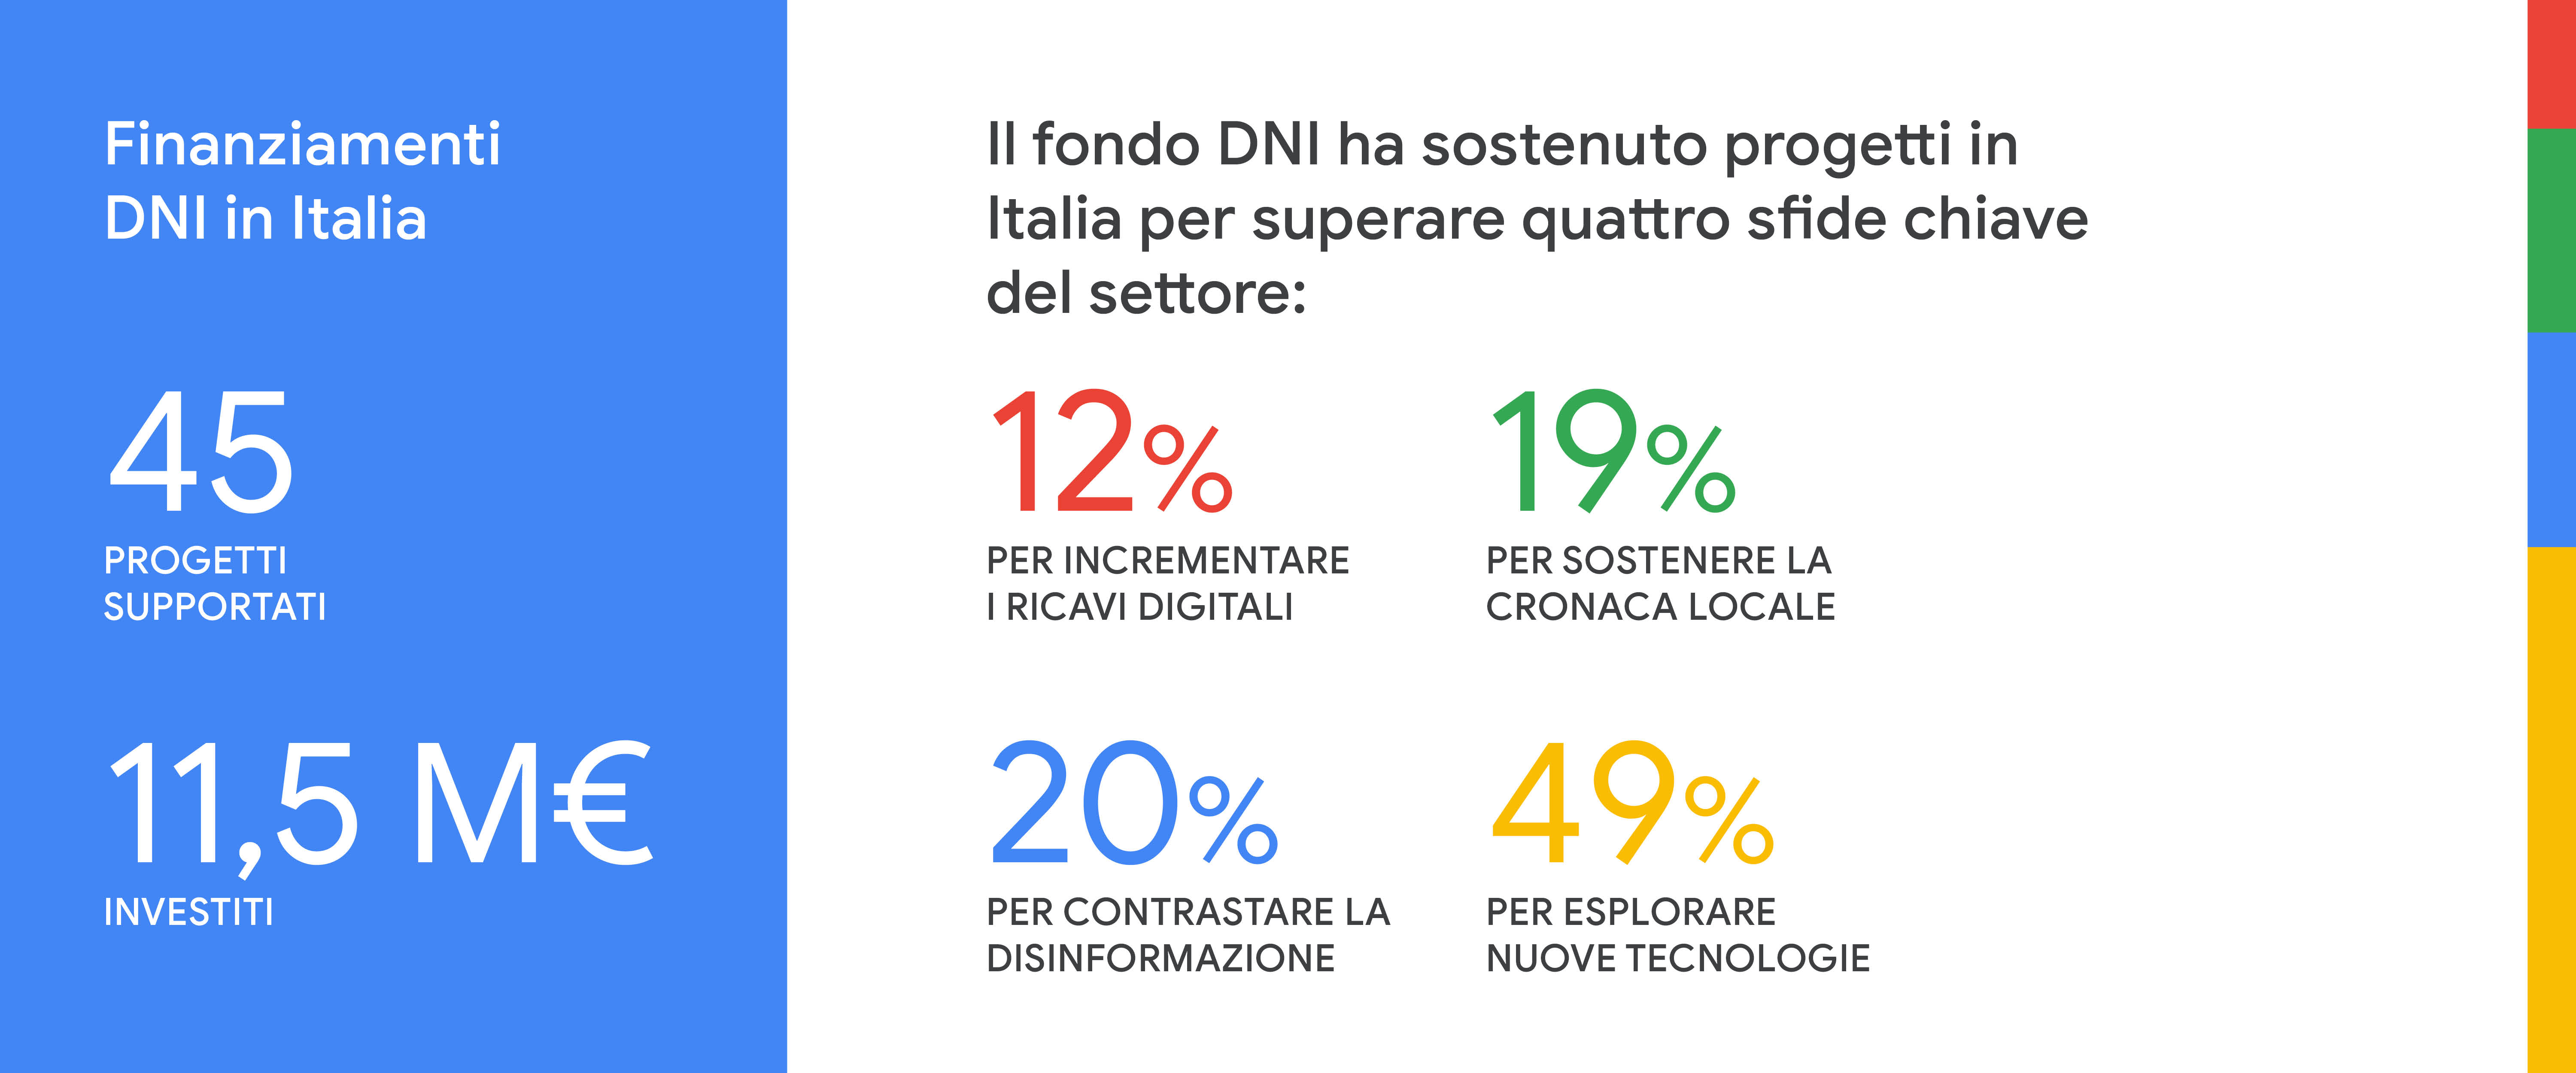 Infografica riassuntiva di DNI in Italia.